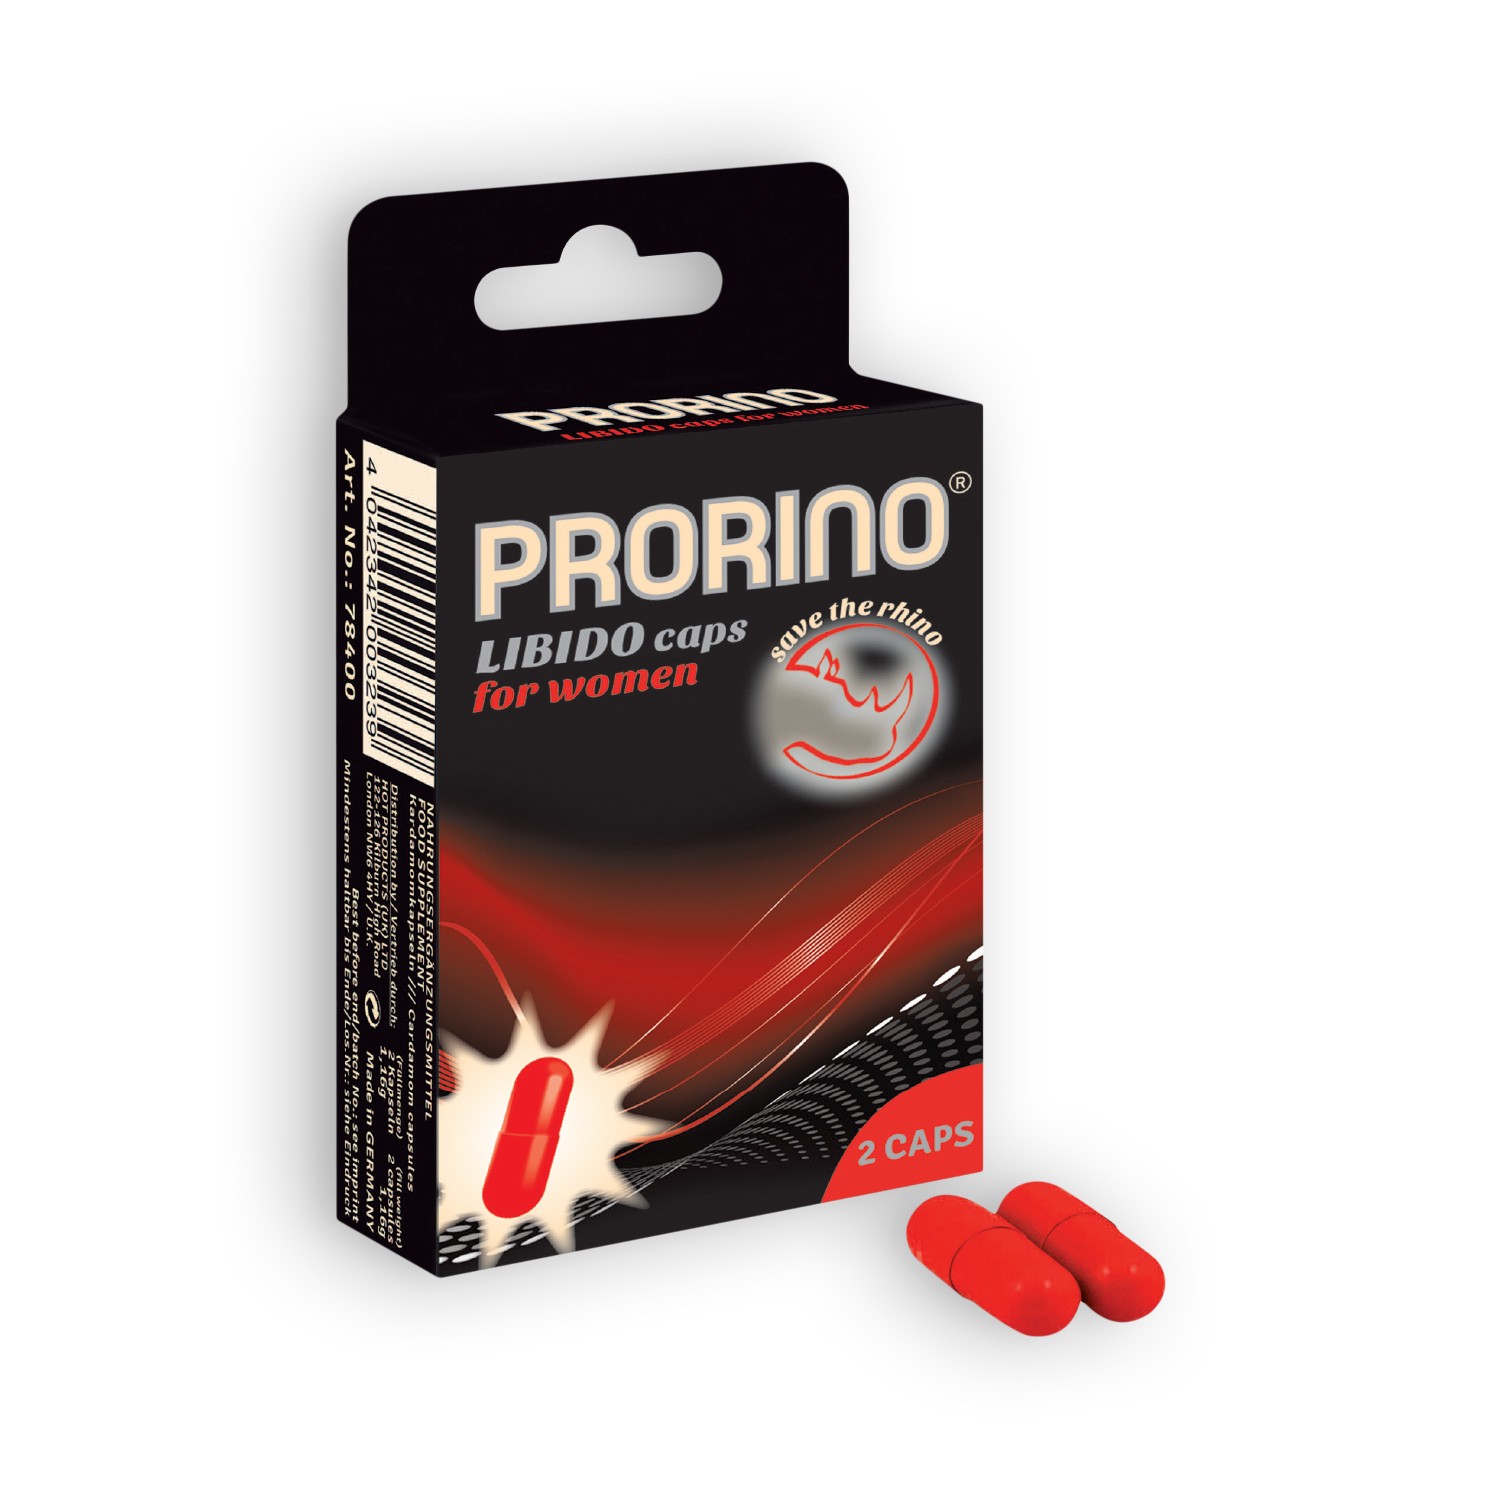 prorino-libido-caps-for-women-2-caps-drugstore-prorino.jpg